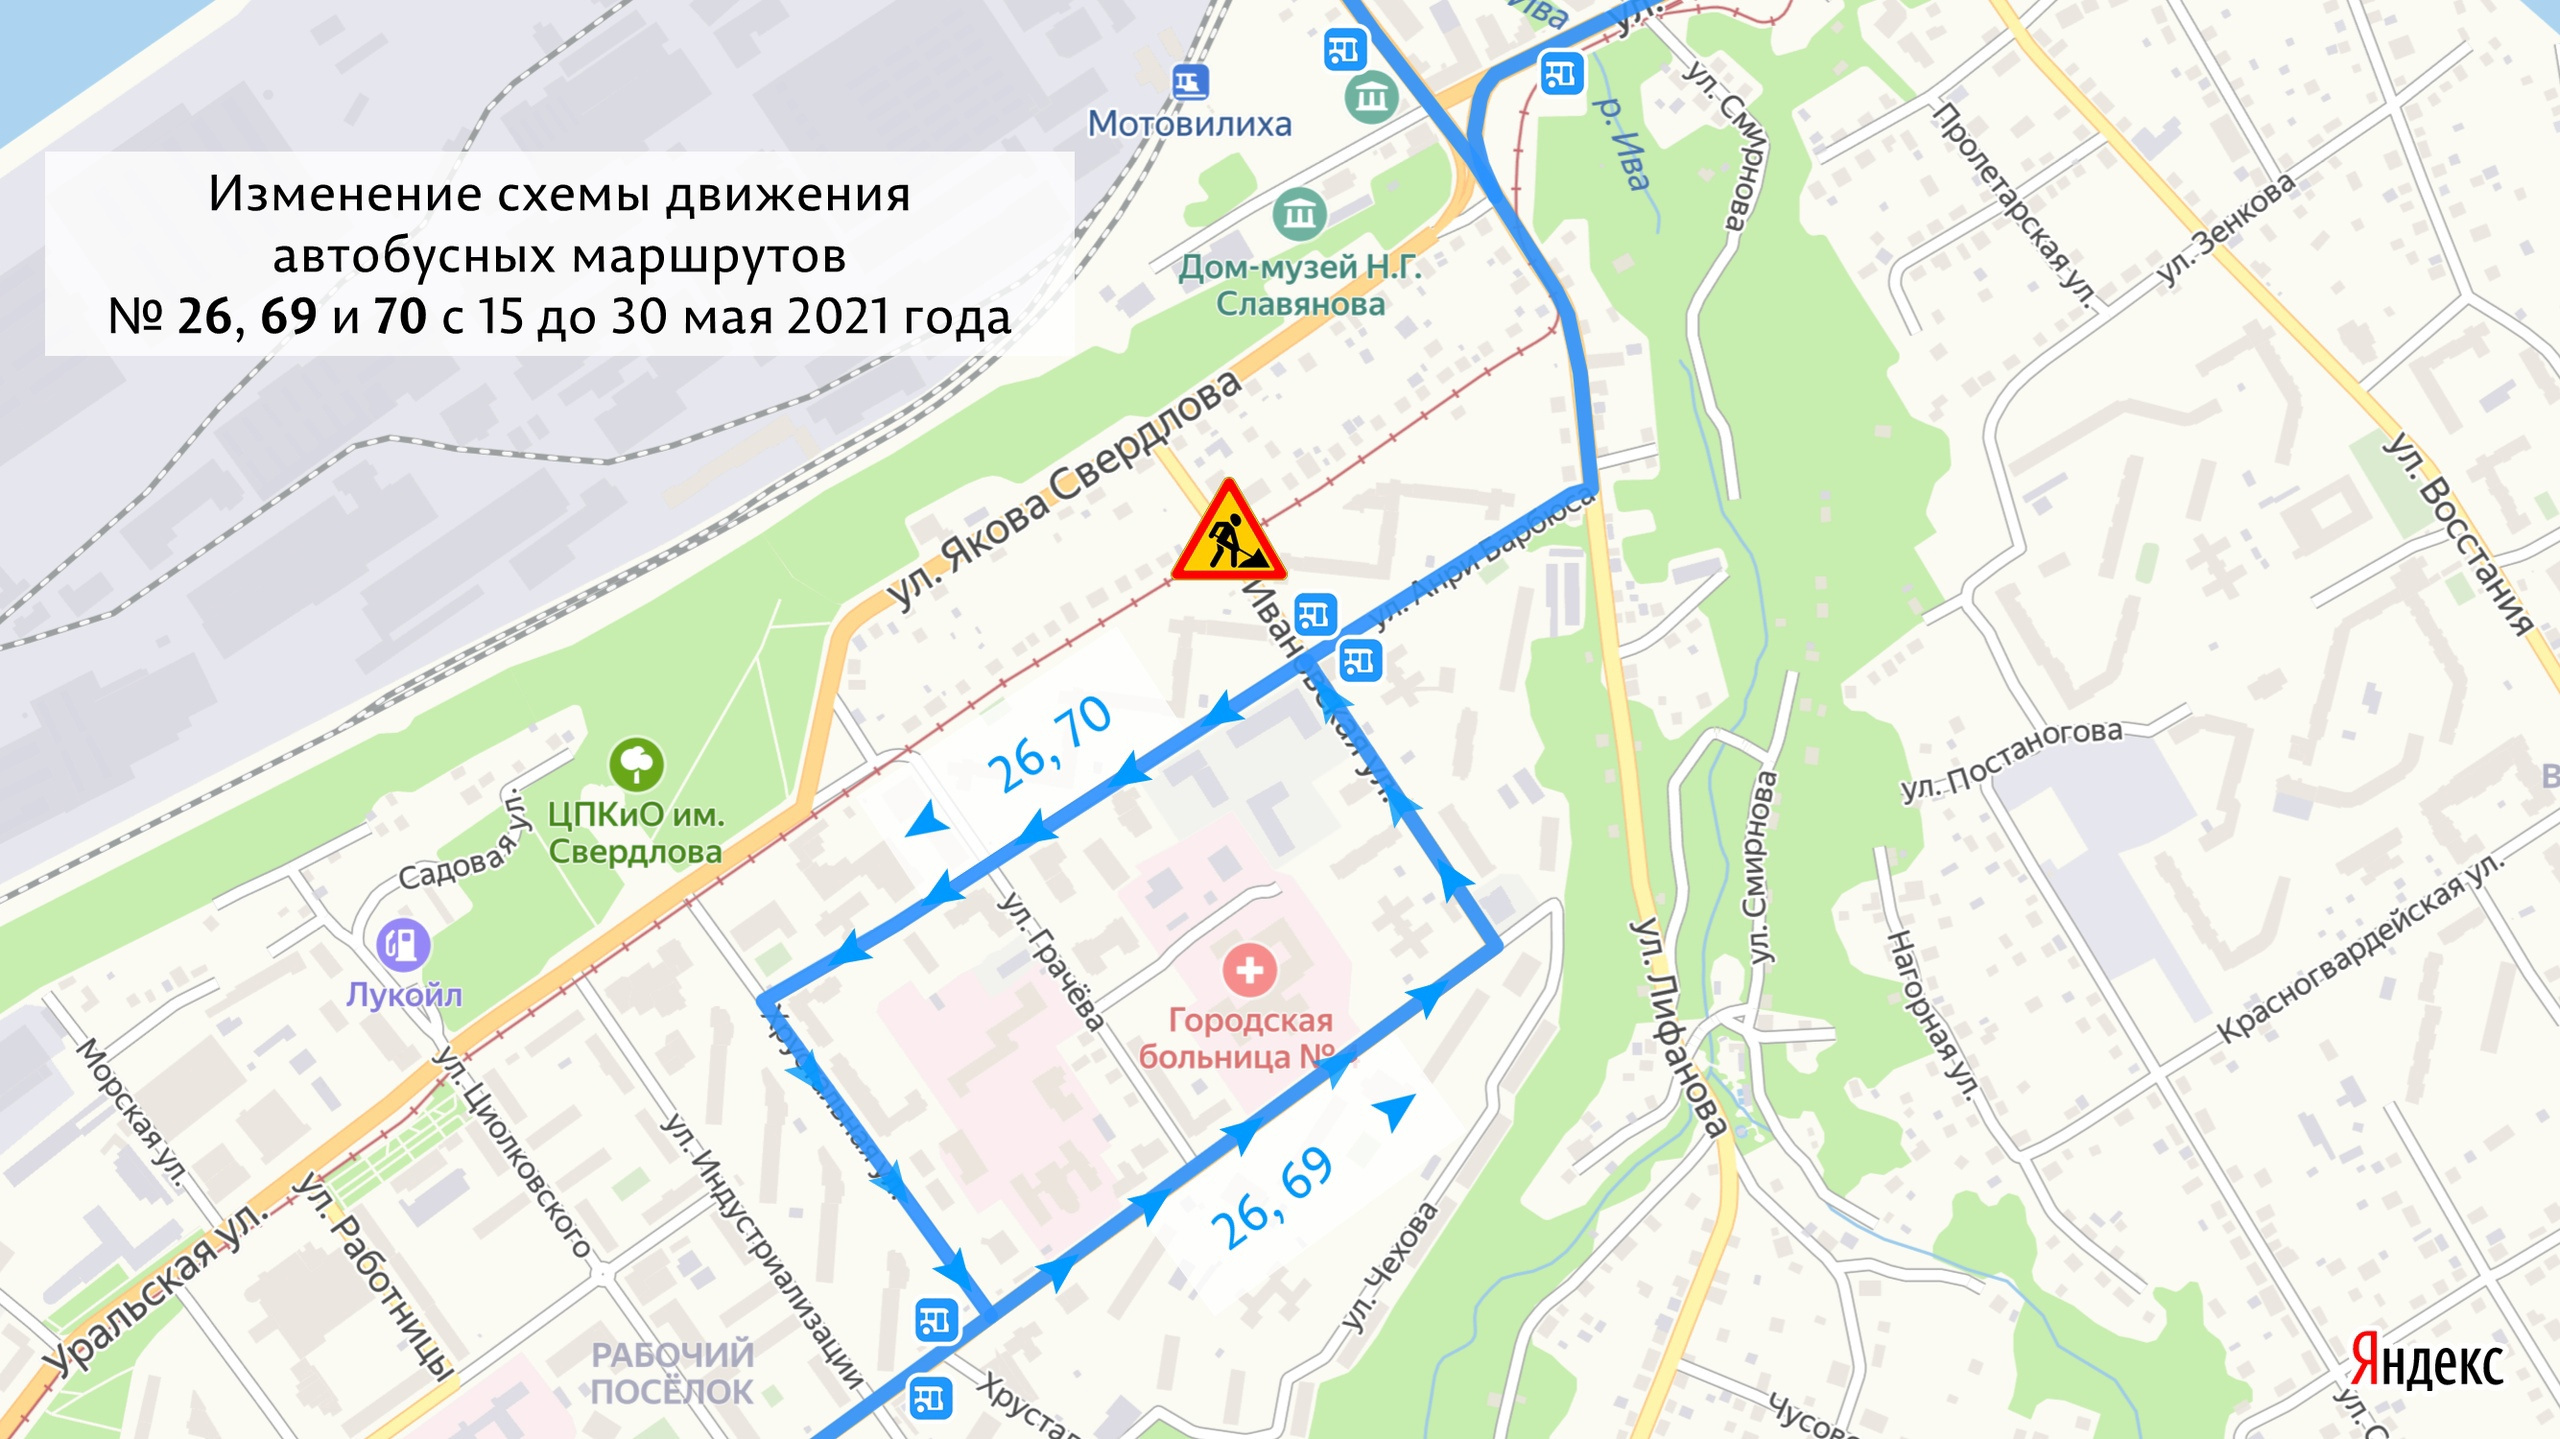 Автобусы поедут в объезд перекрытого участка улицы Ивановской